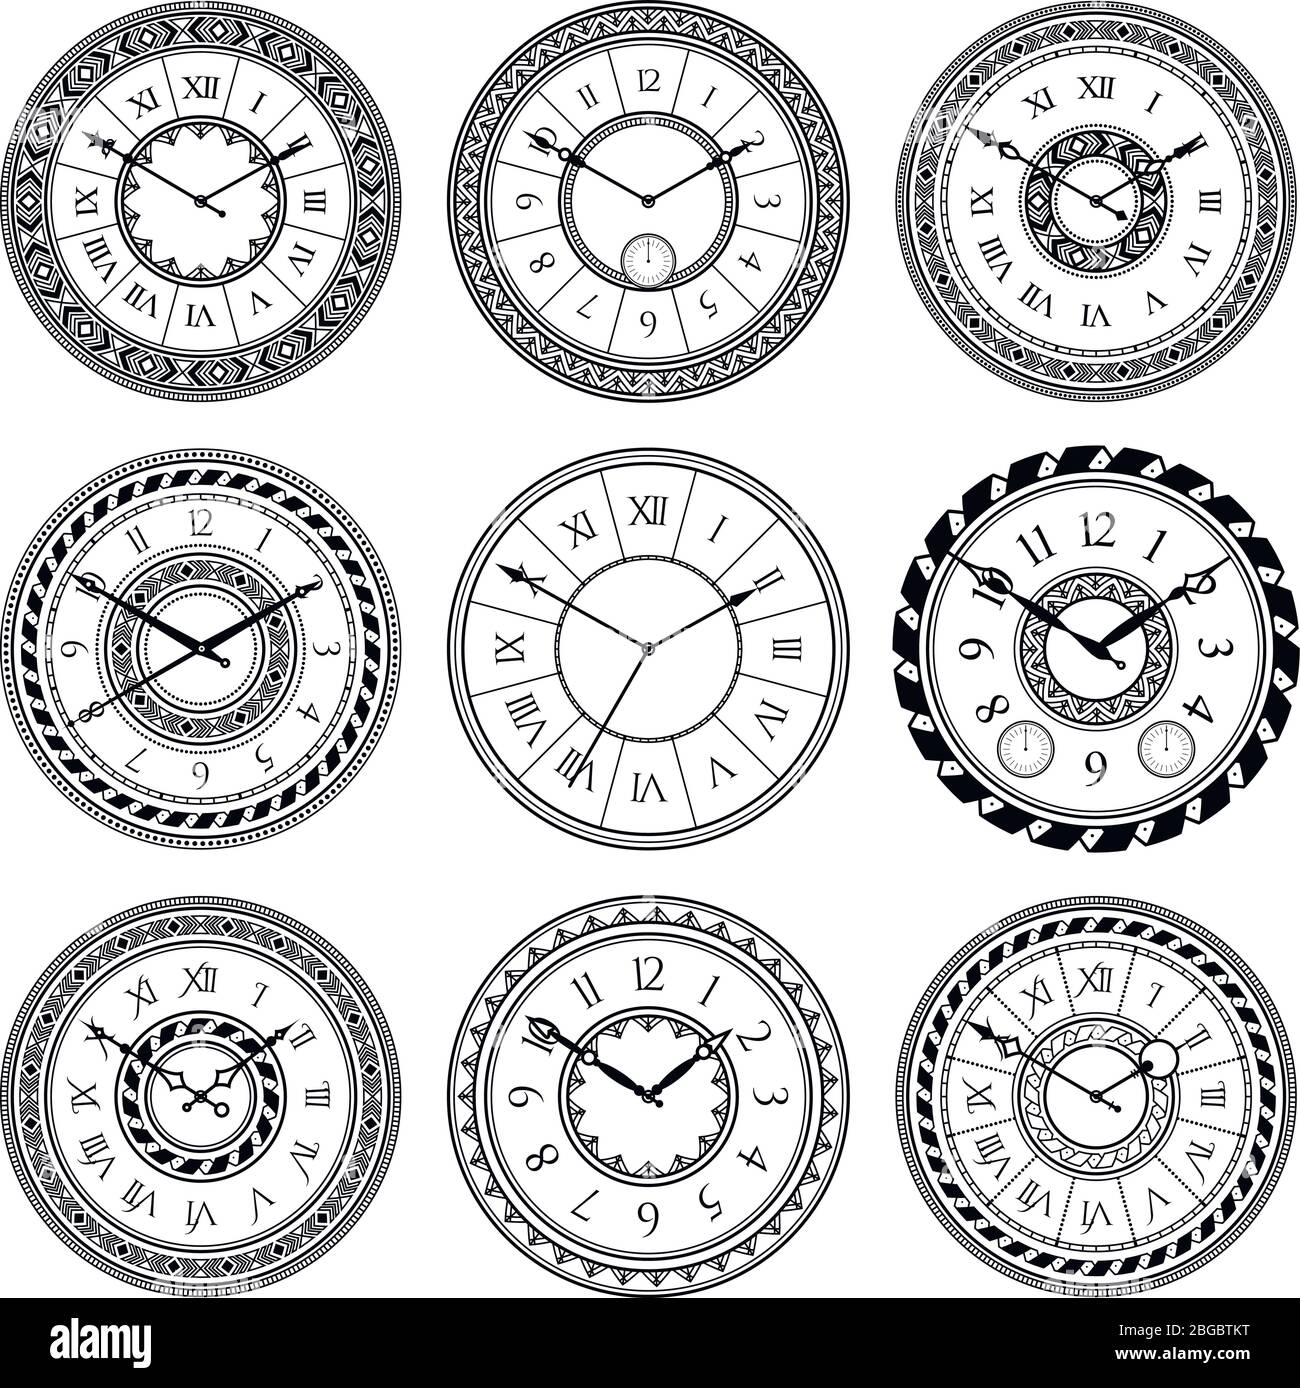 Vectores e ilustraciones de Maquinaria reloj para descargar gratis